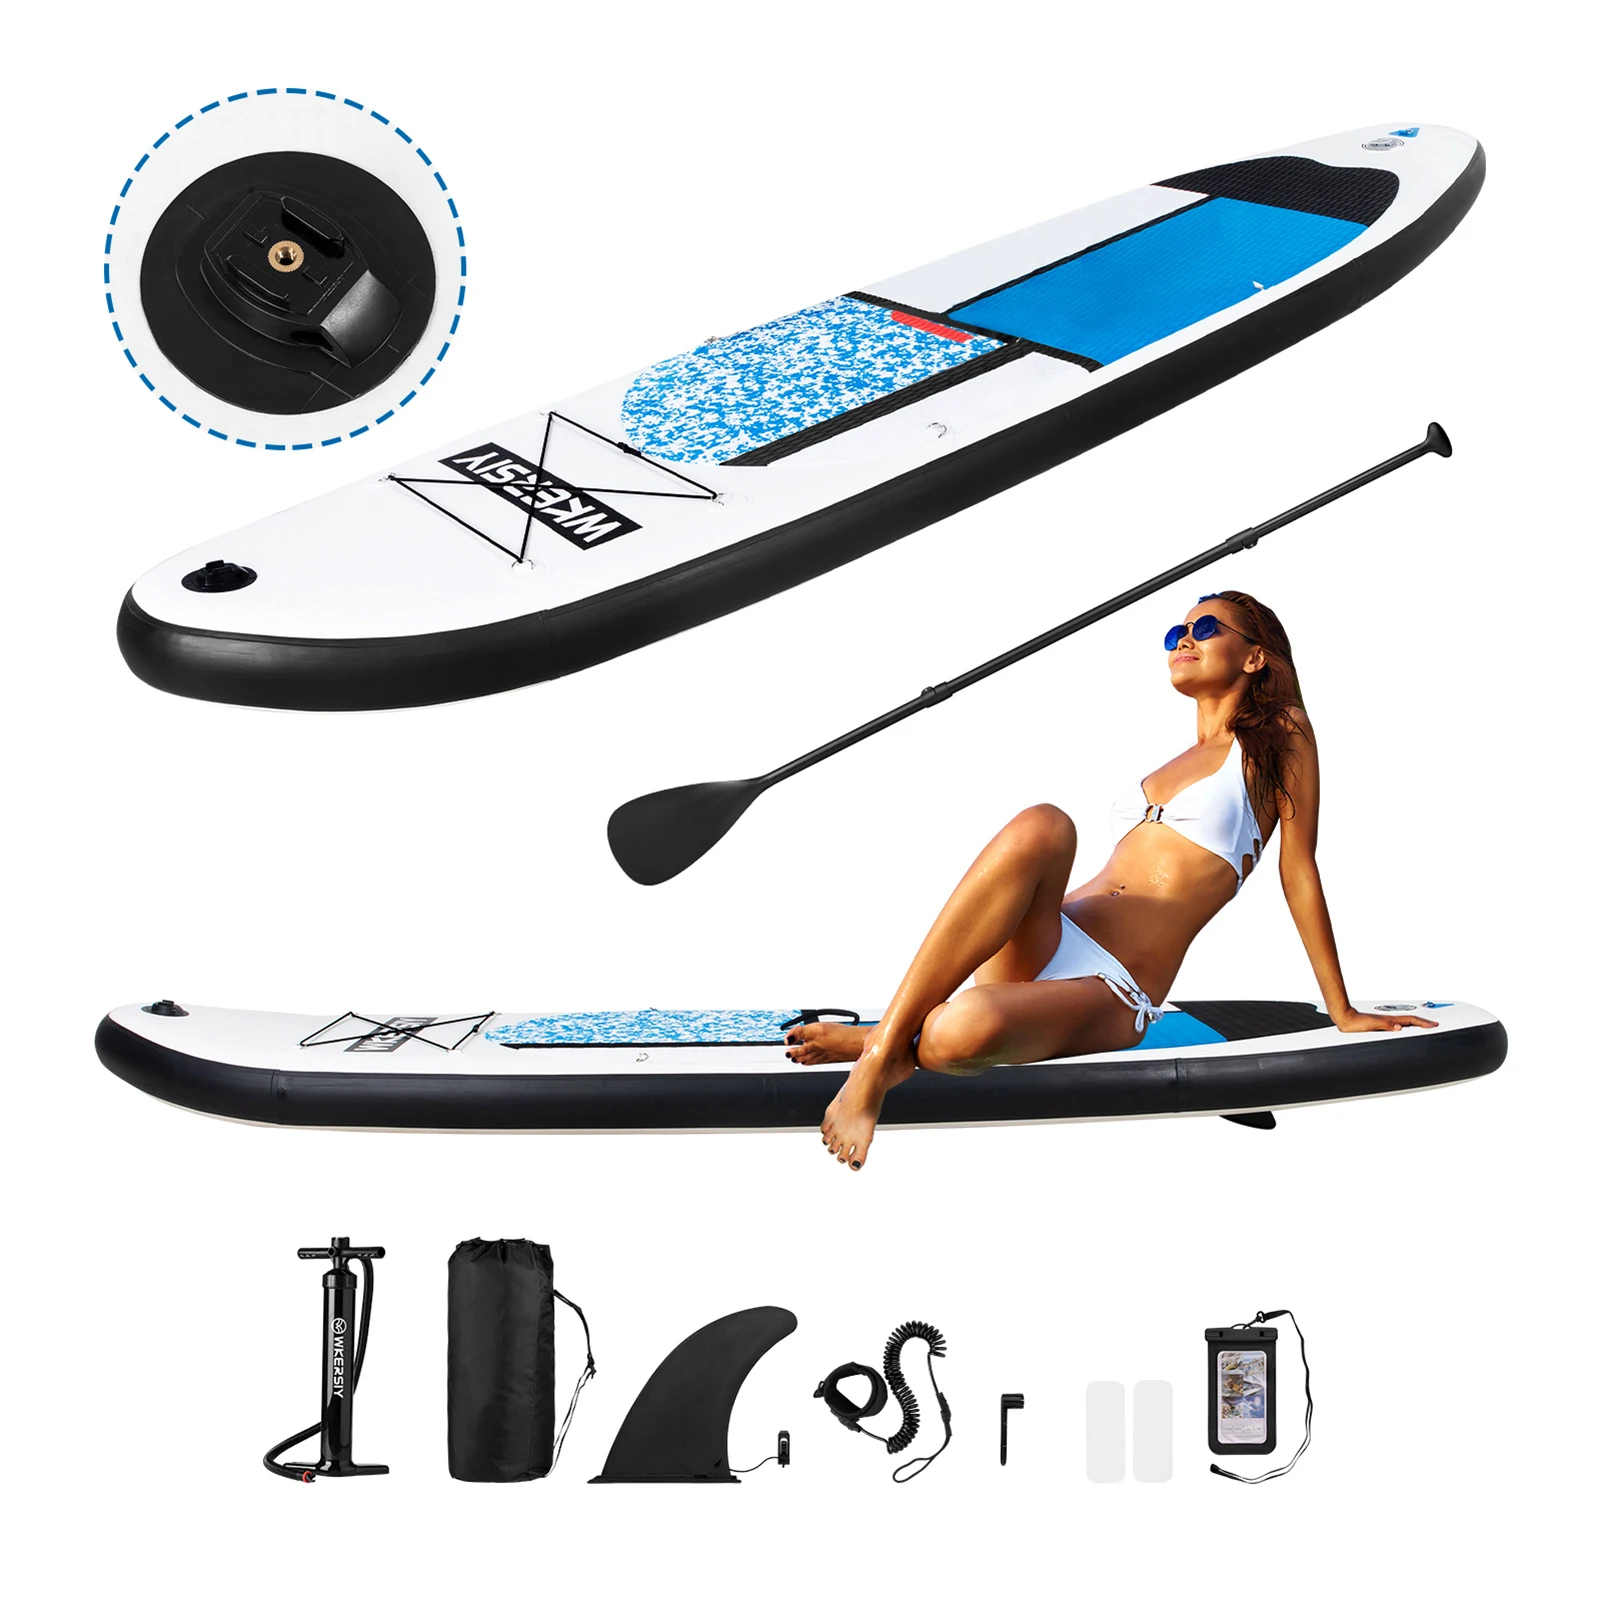 SUP-aufblasbare Surfbrett-Paddelbrett-Stand Up-Surfboard-Set mit Luftpumpe mit allen Extras wie Tragetasche, Fusskordel 4